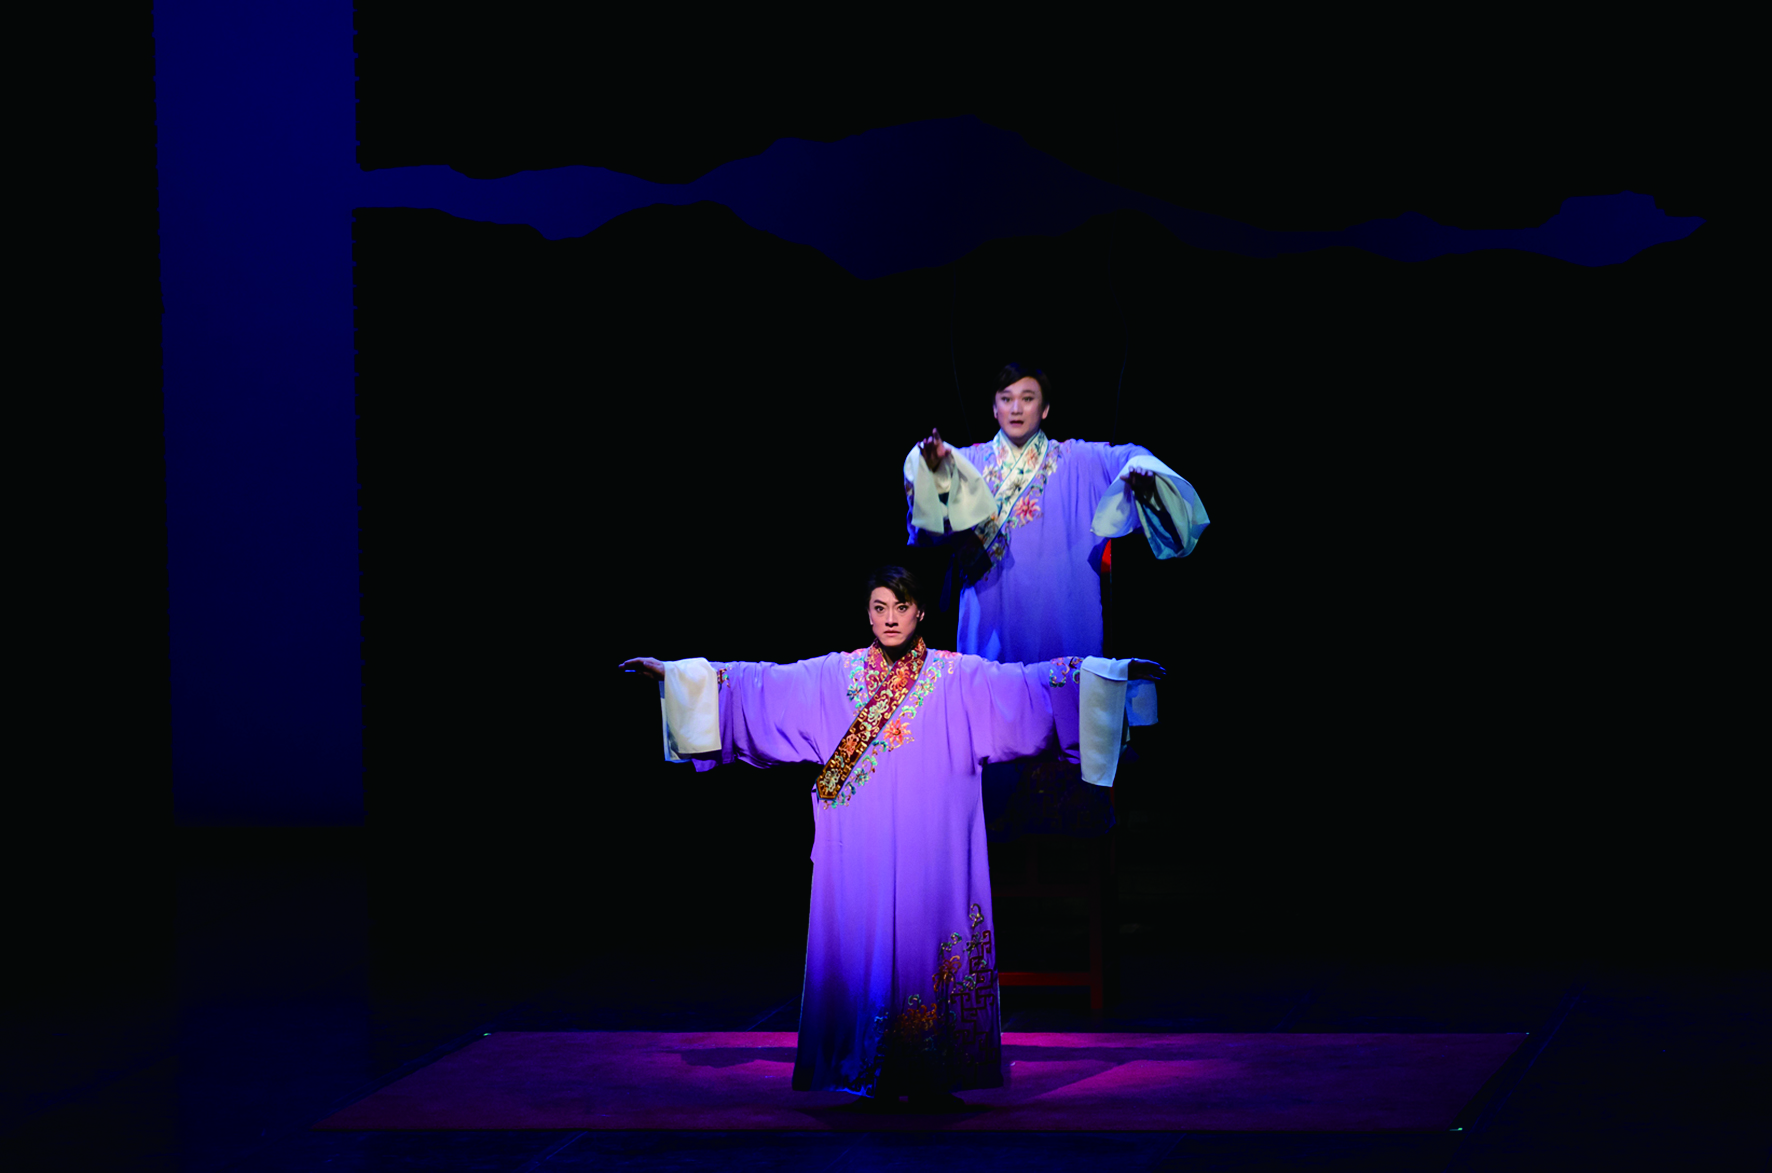 《百年戲樓》以舞臺劇的形式展現京劇演員臺前幕後的藝事浮生。.jpg